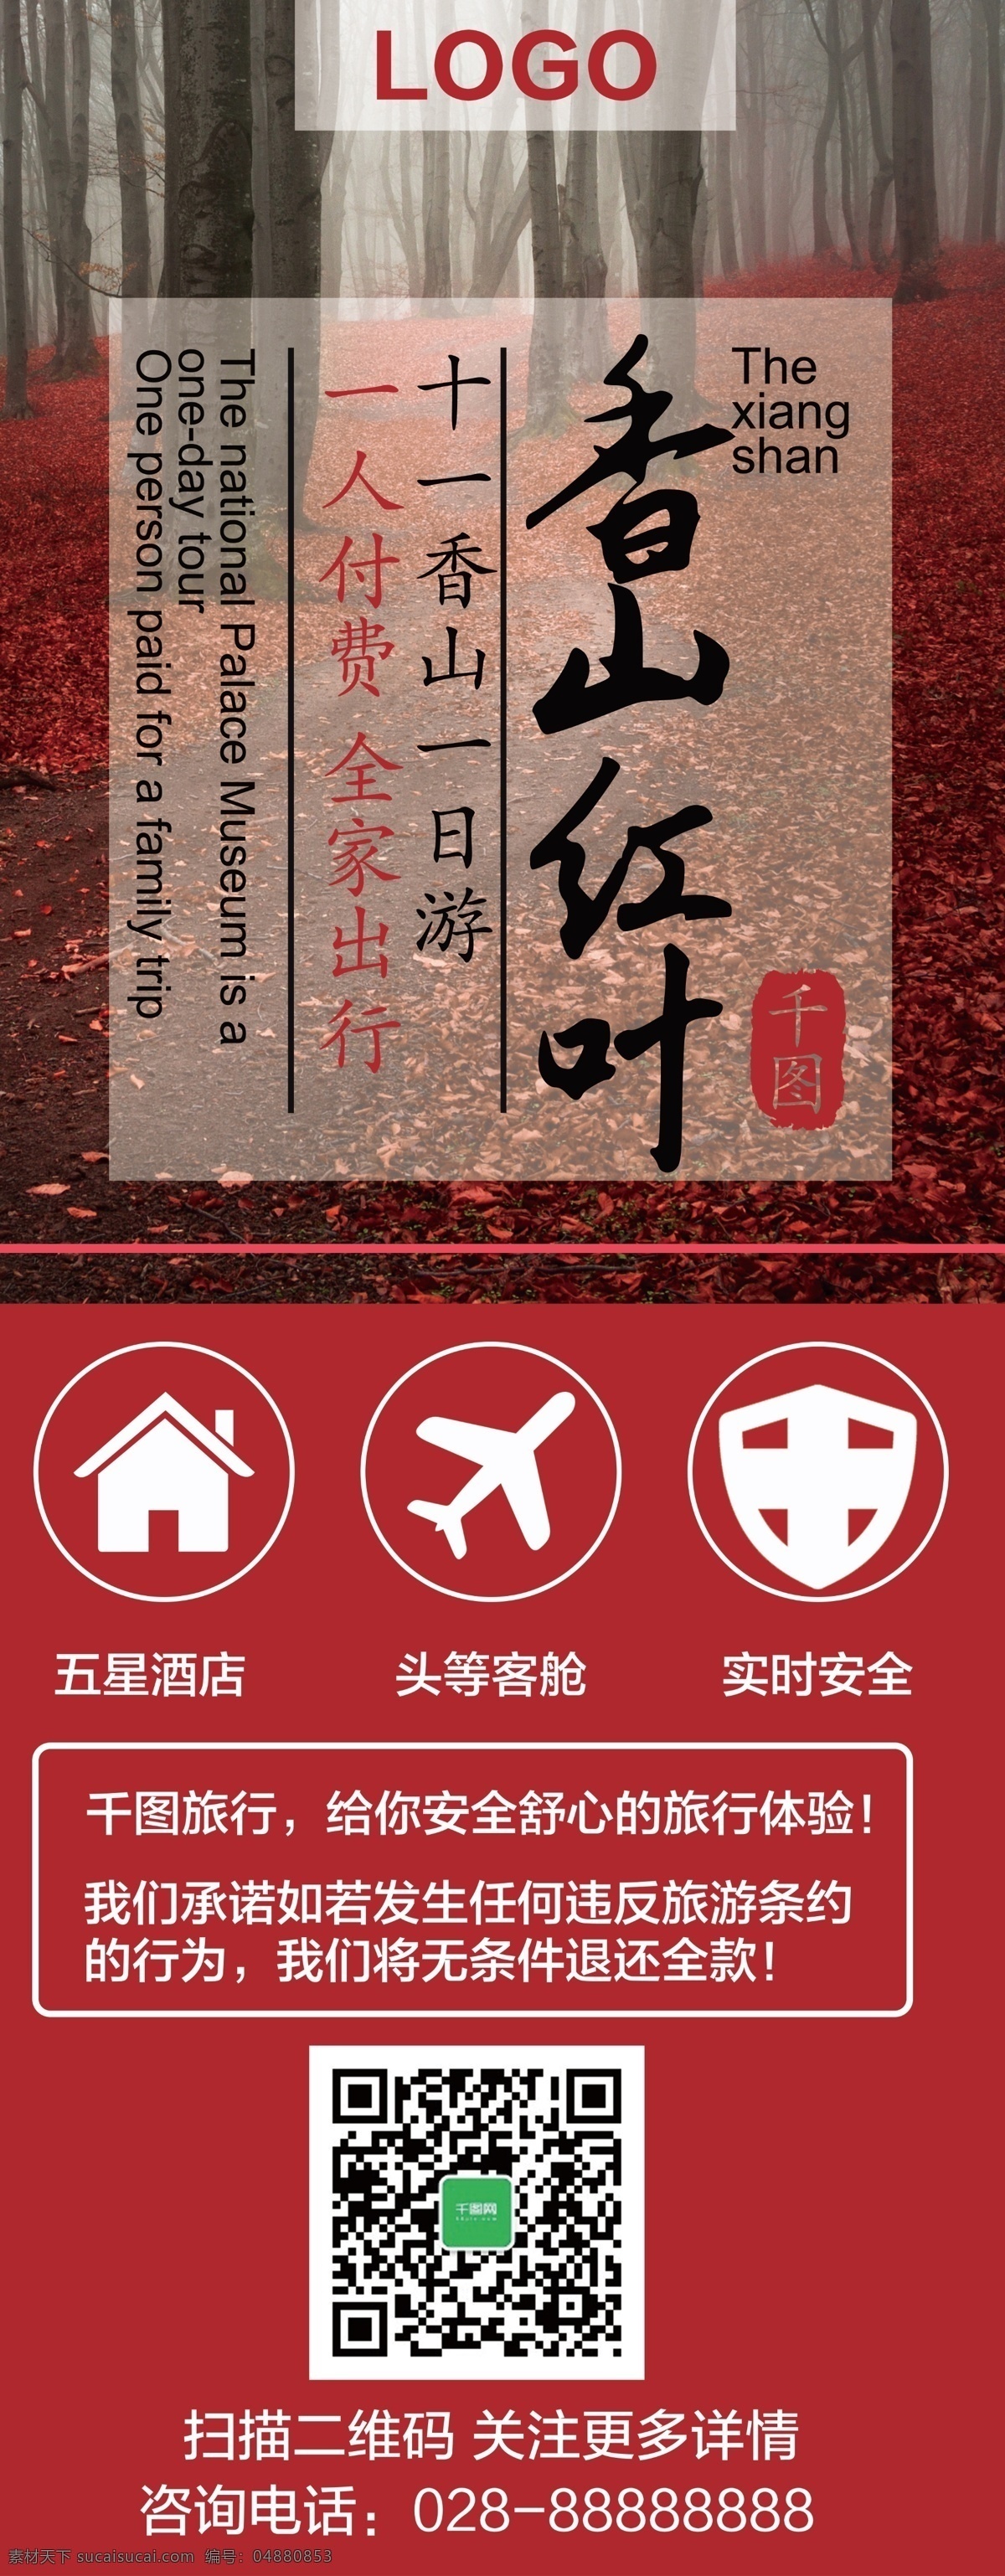 红色 唯美 促销 风 香山 旅游 旅行社 宣传 展架 促销风 红叶 枫林 秋天风景